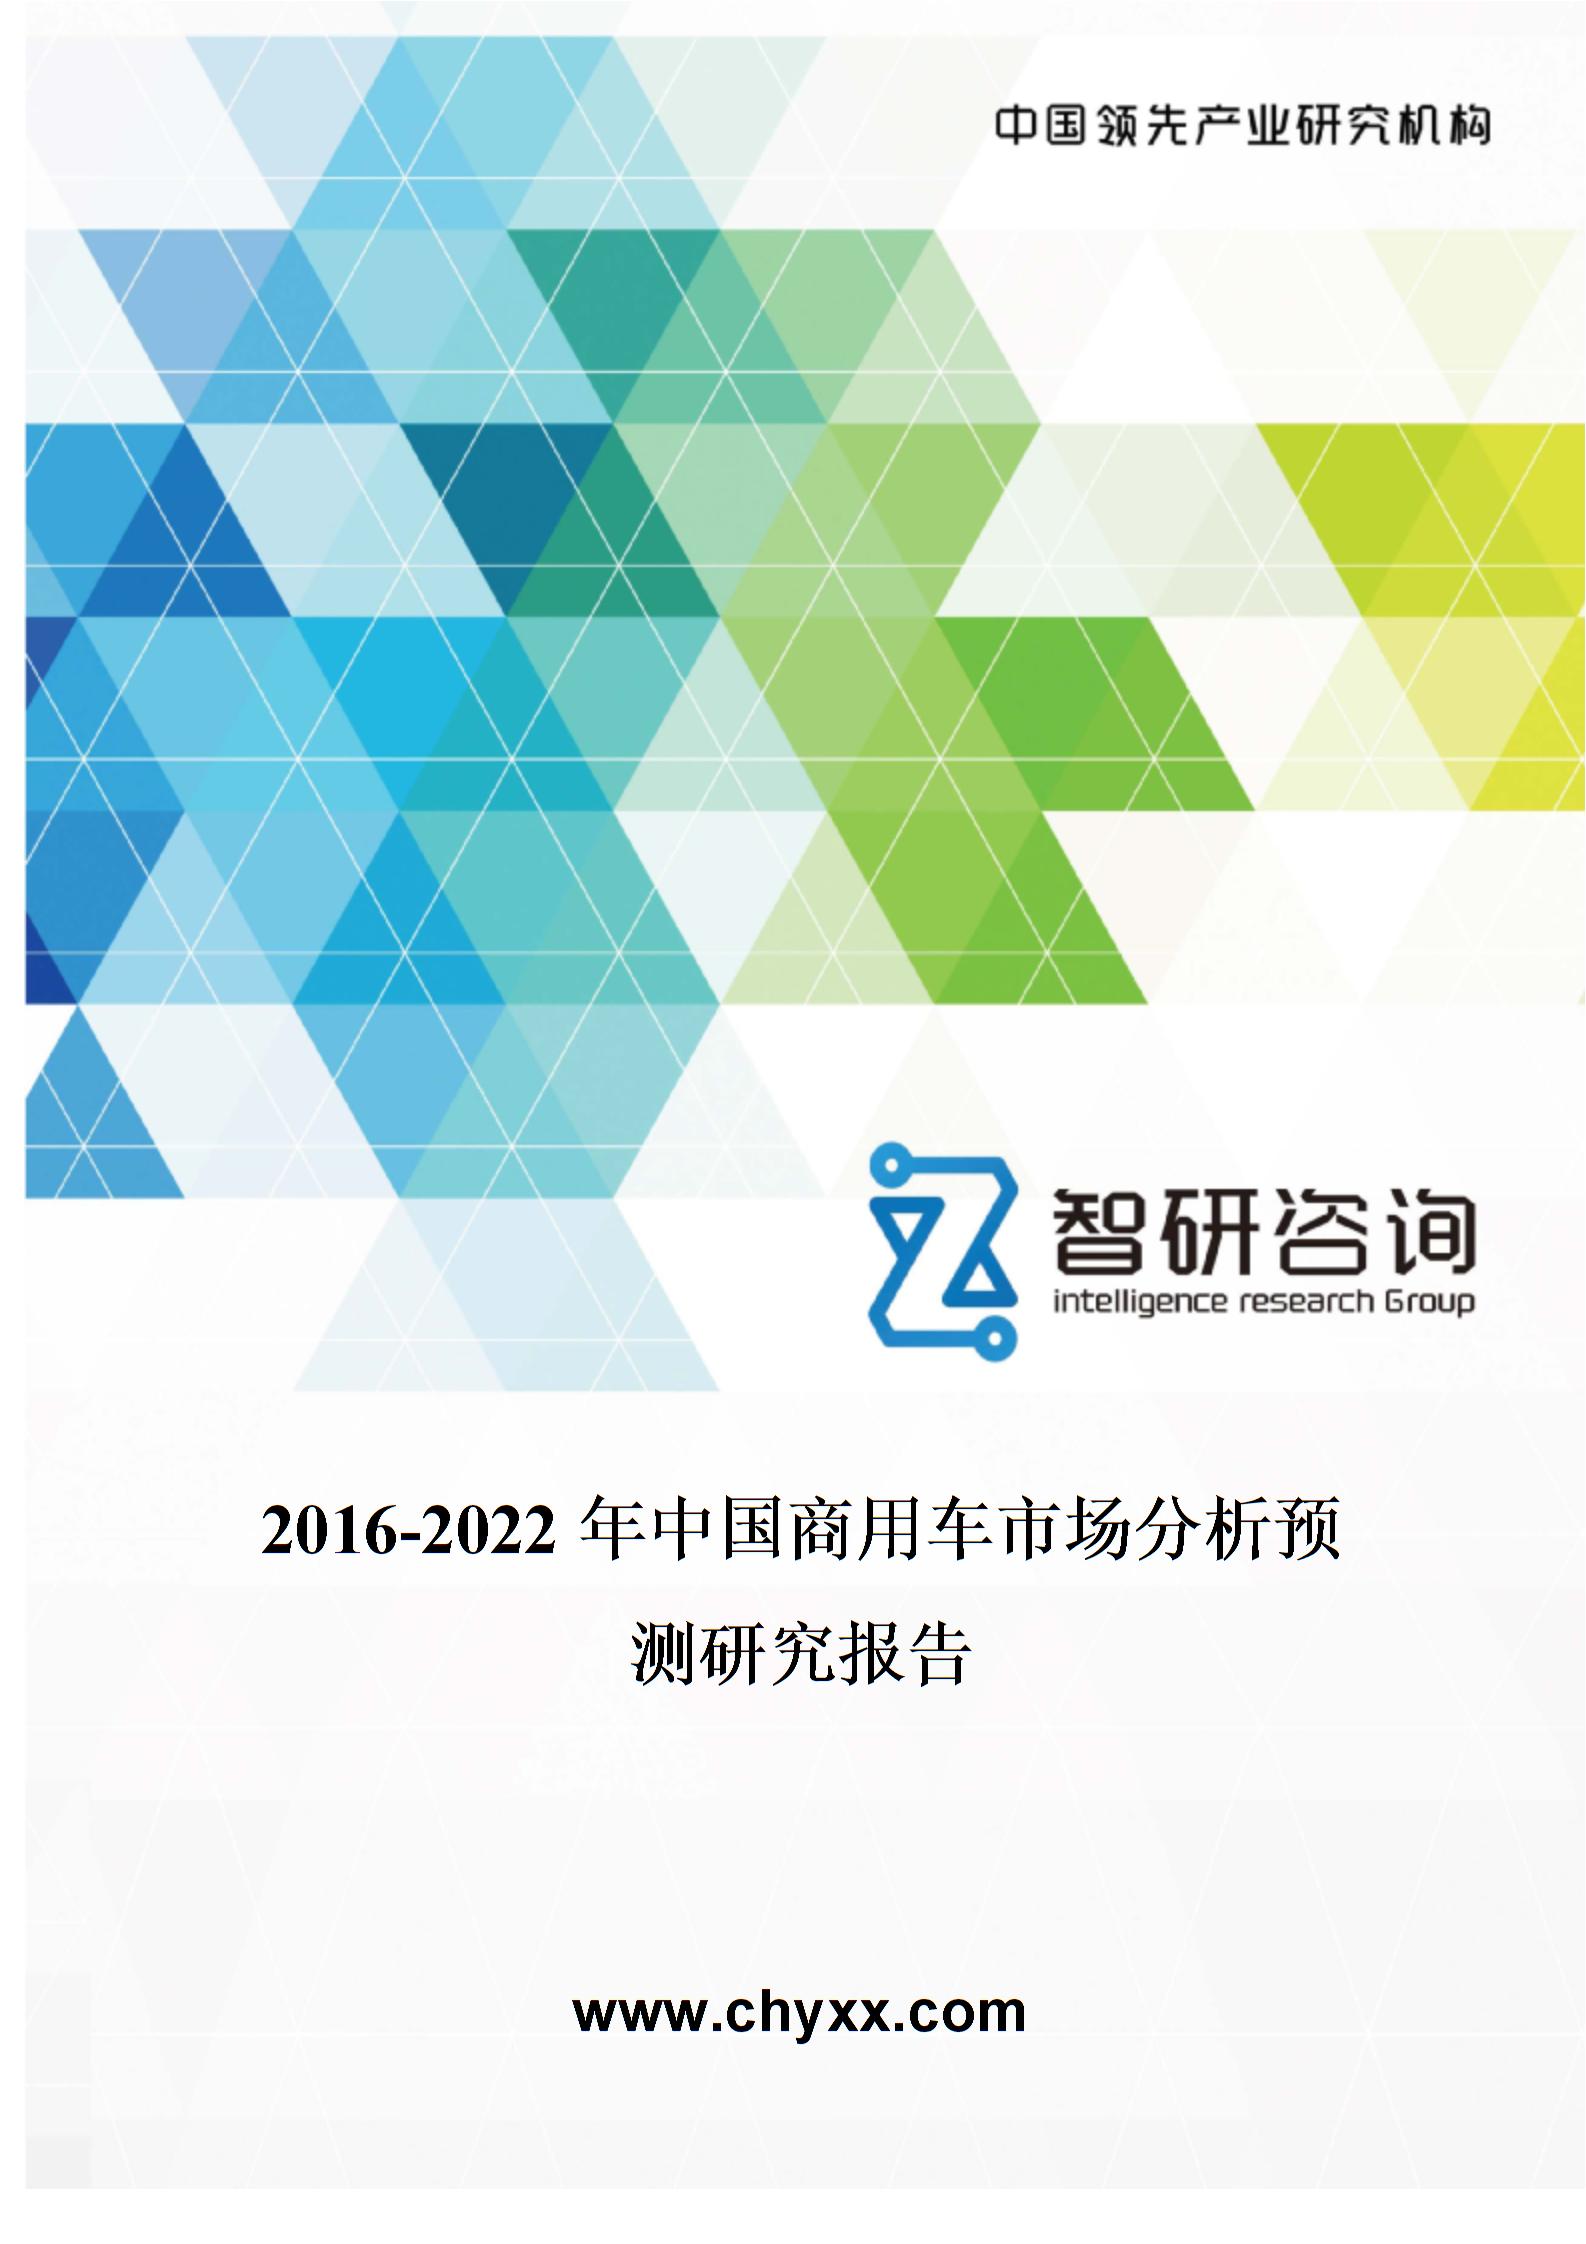 2016-2022年中国商用车市场分析预测研究报告图片